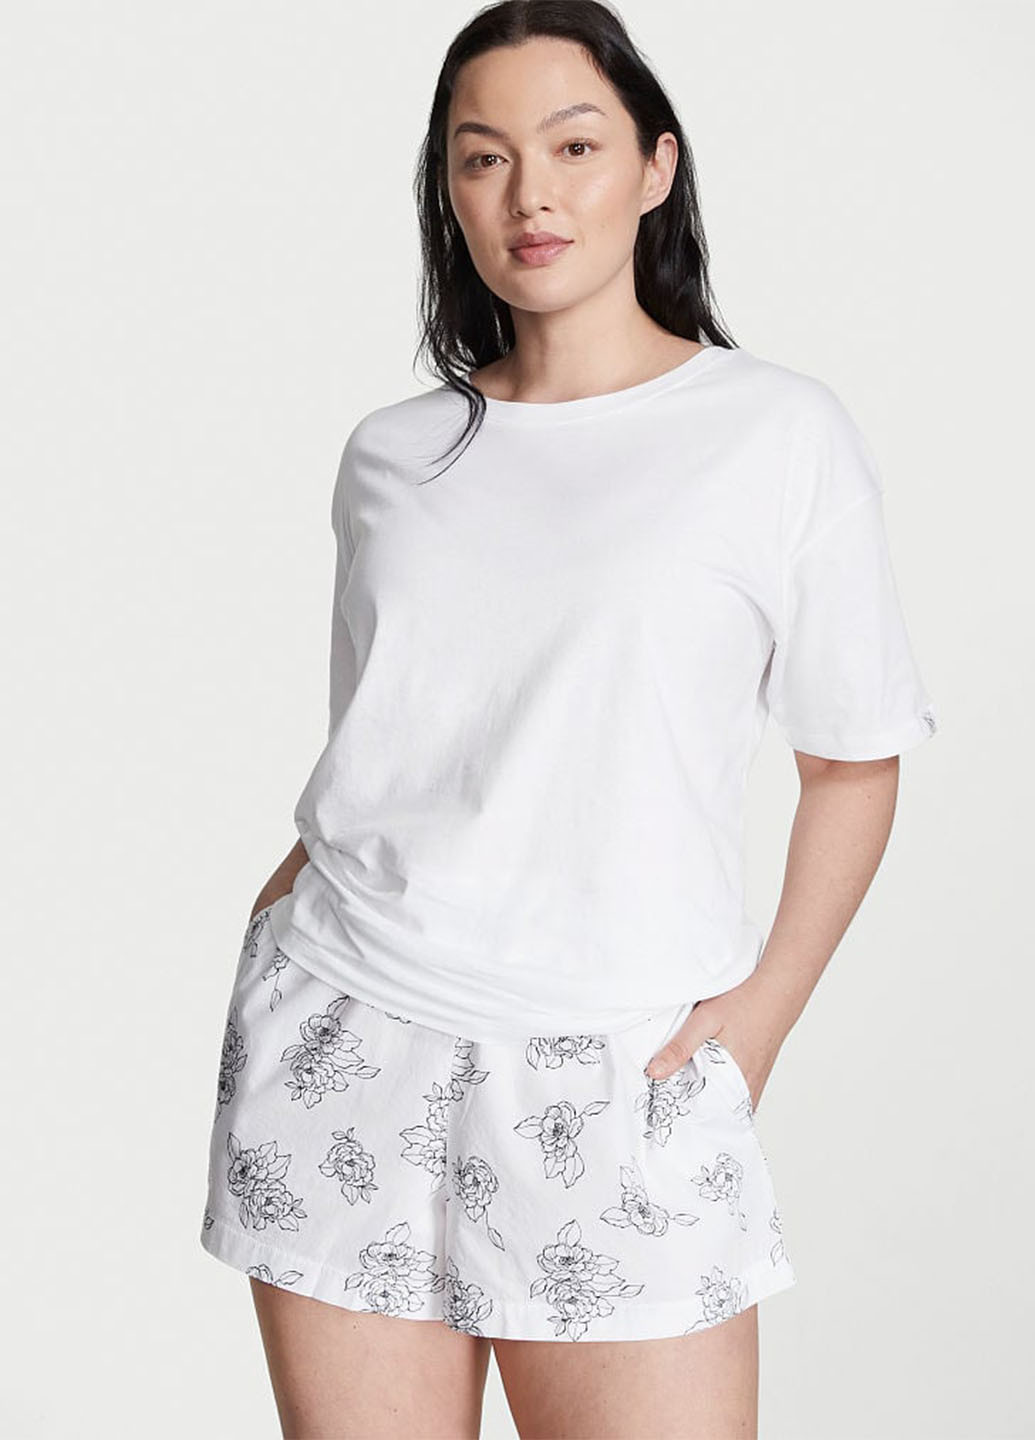 Белая всесезон пижама (футболка, шорты) футболка + шорты Victoria's Secret